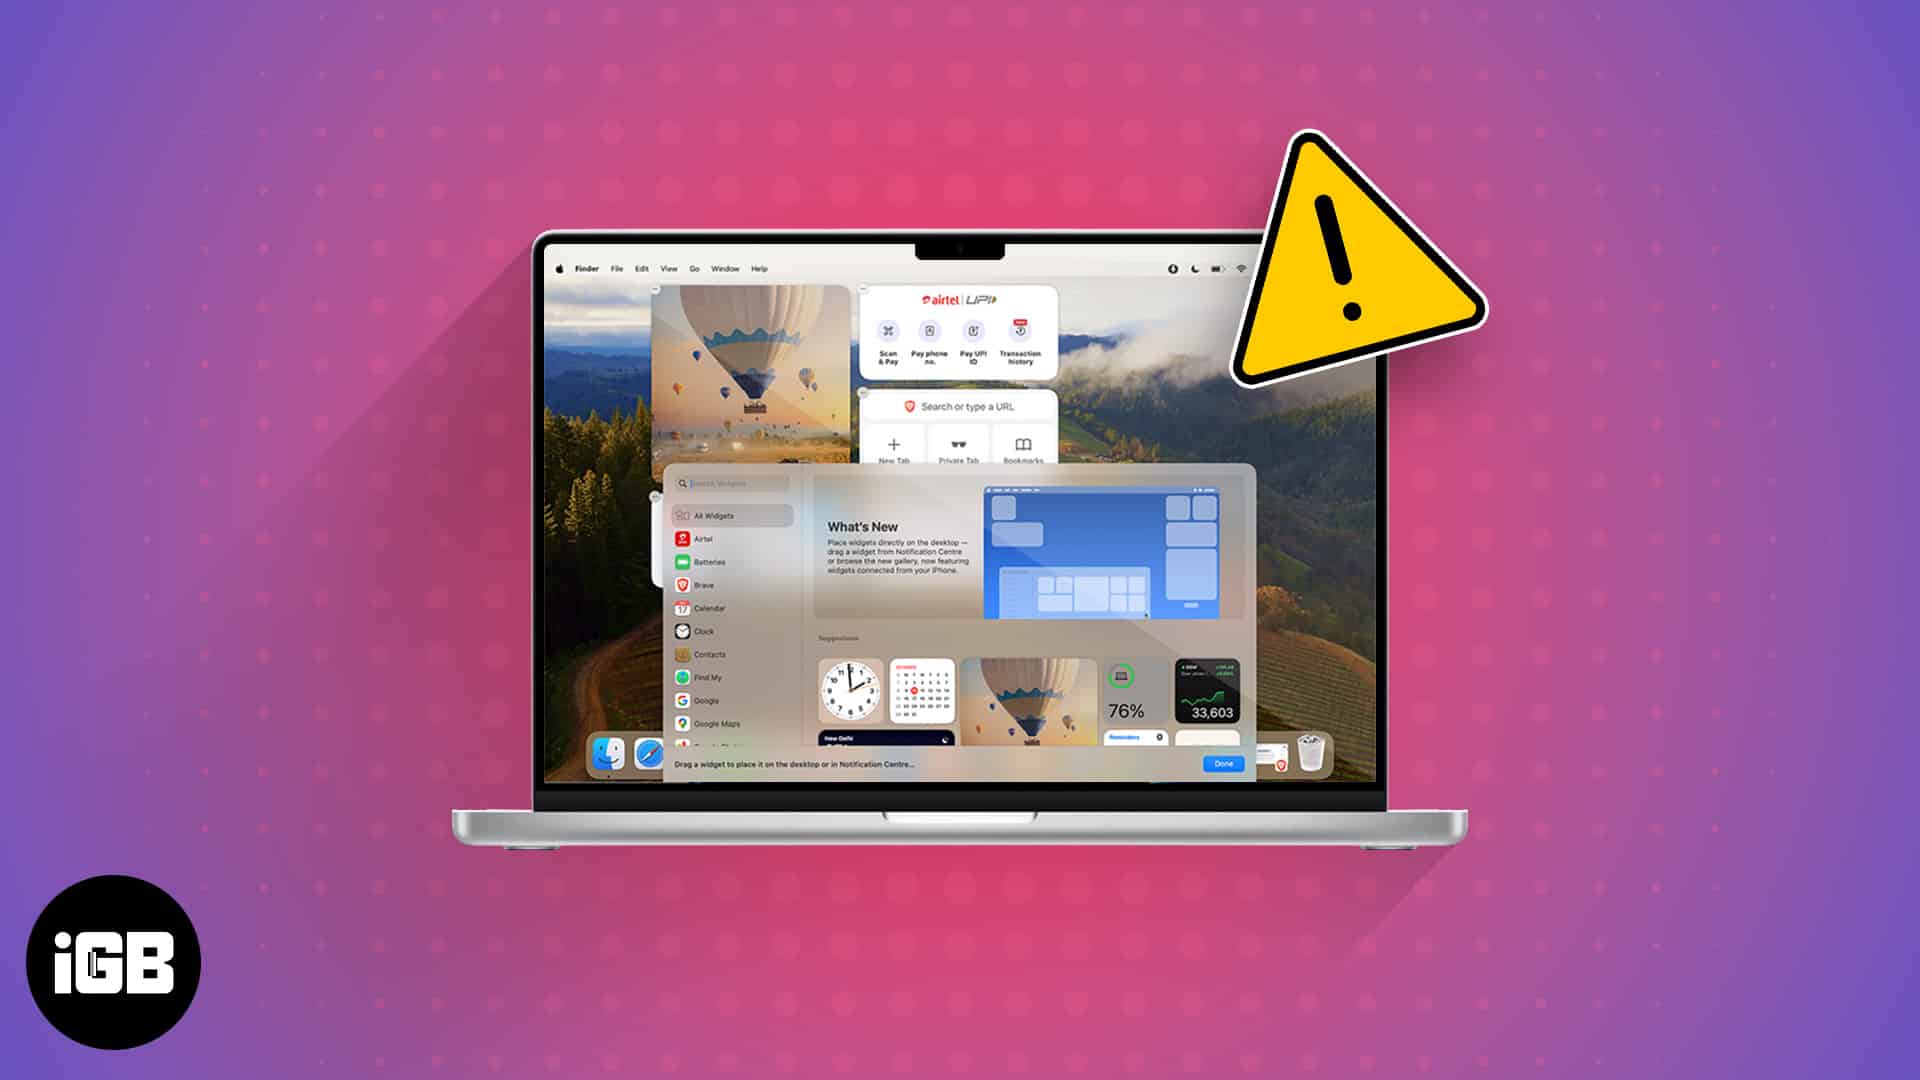 macOS Sonoma desktop widgets not working